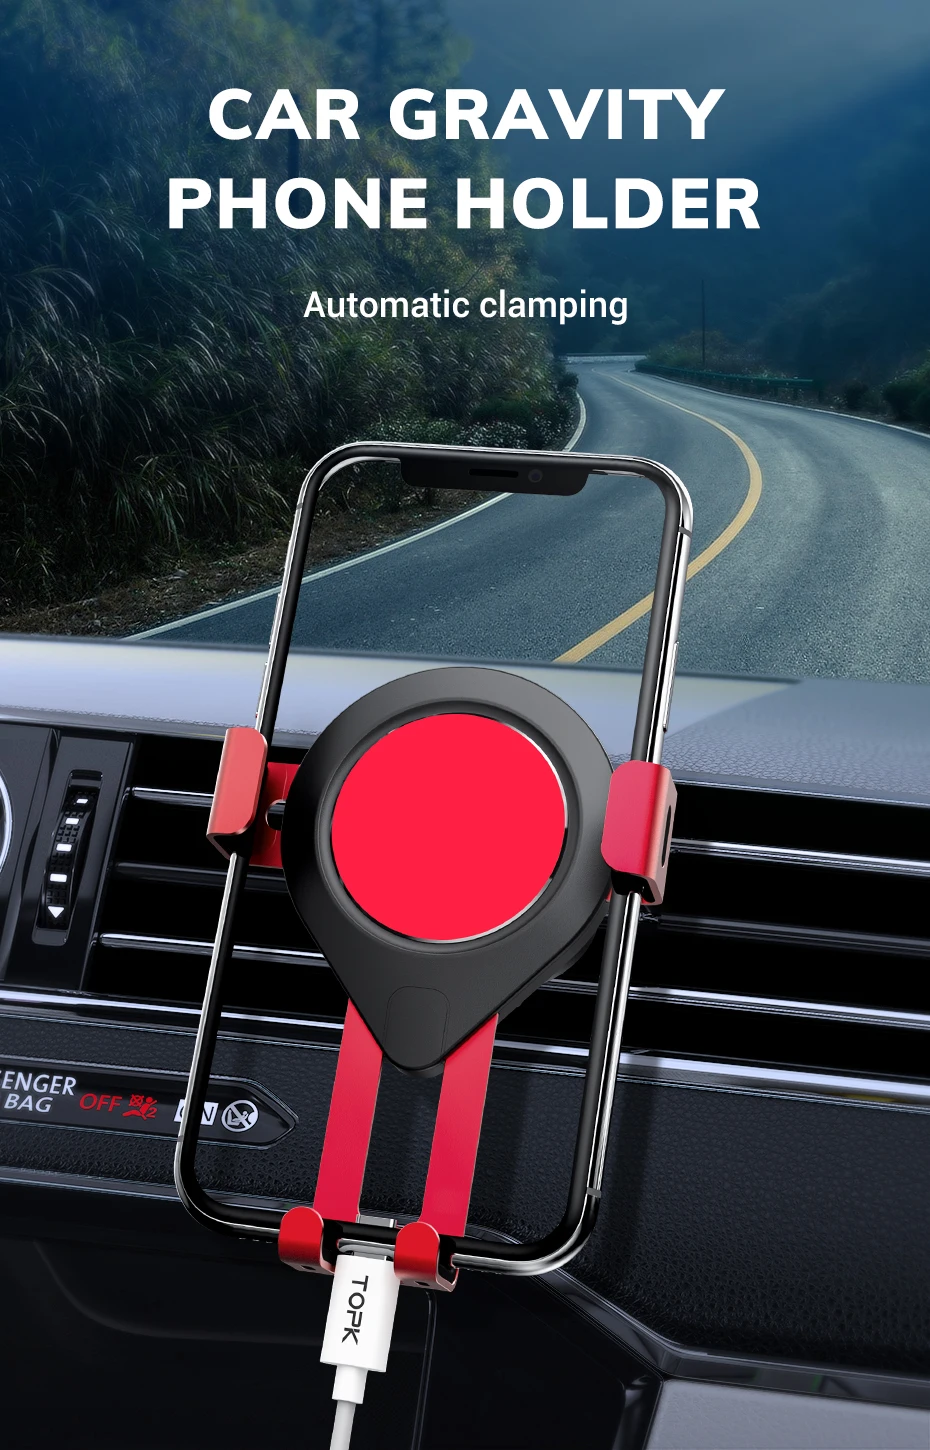 TOPK D17 алюминиевый сплав Gravity Air Vent Автомобильный держатель для телефона для iPhone 11 Pro Xs Max Xiaomi huawei samsung мобильный телефон Hol